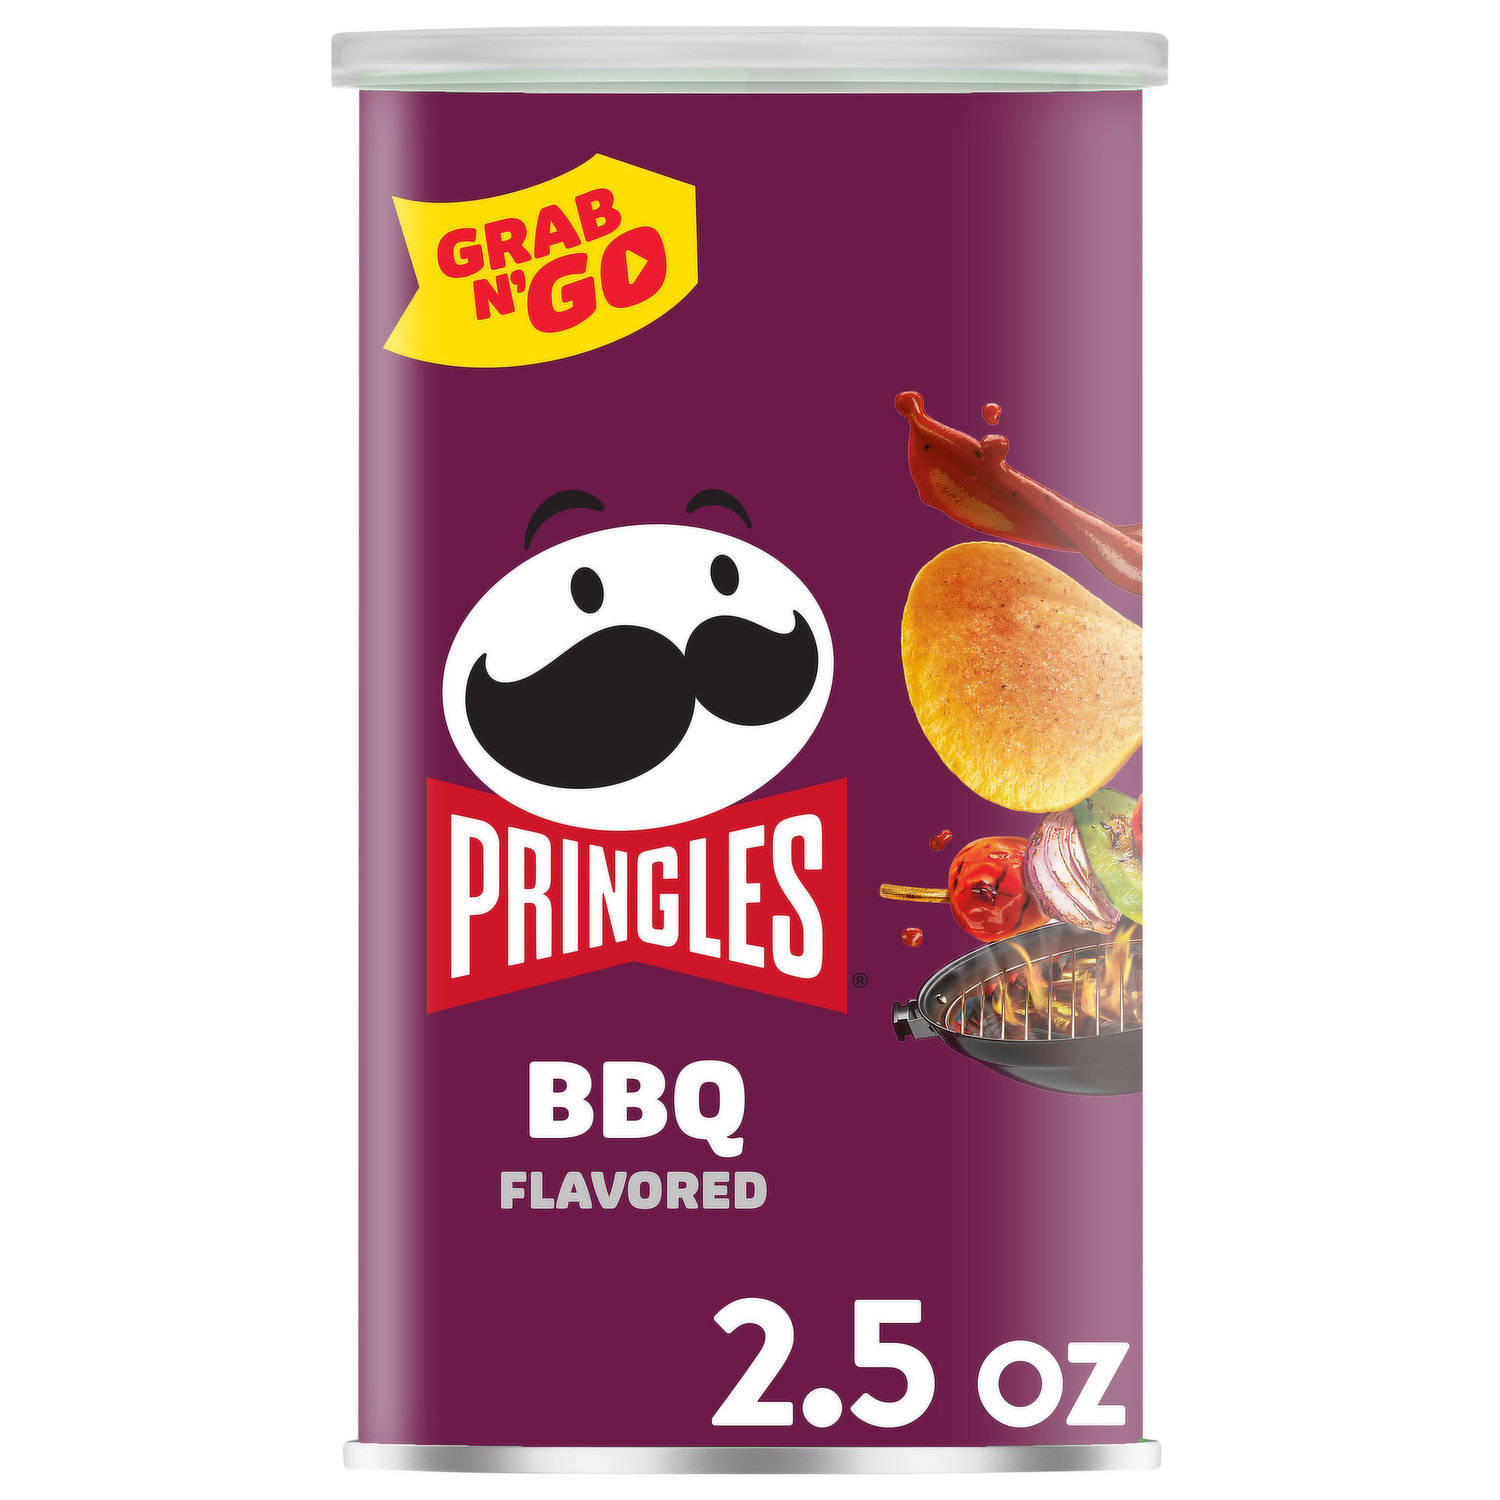 Wholesale Bang Bang Flavor Gang - Finger Lickin' BBQ Blend